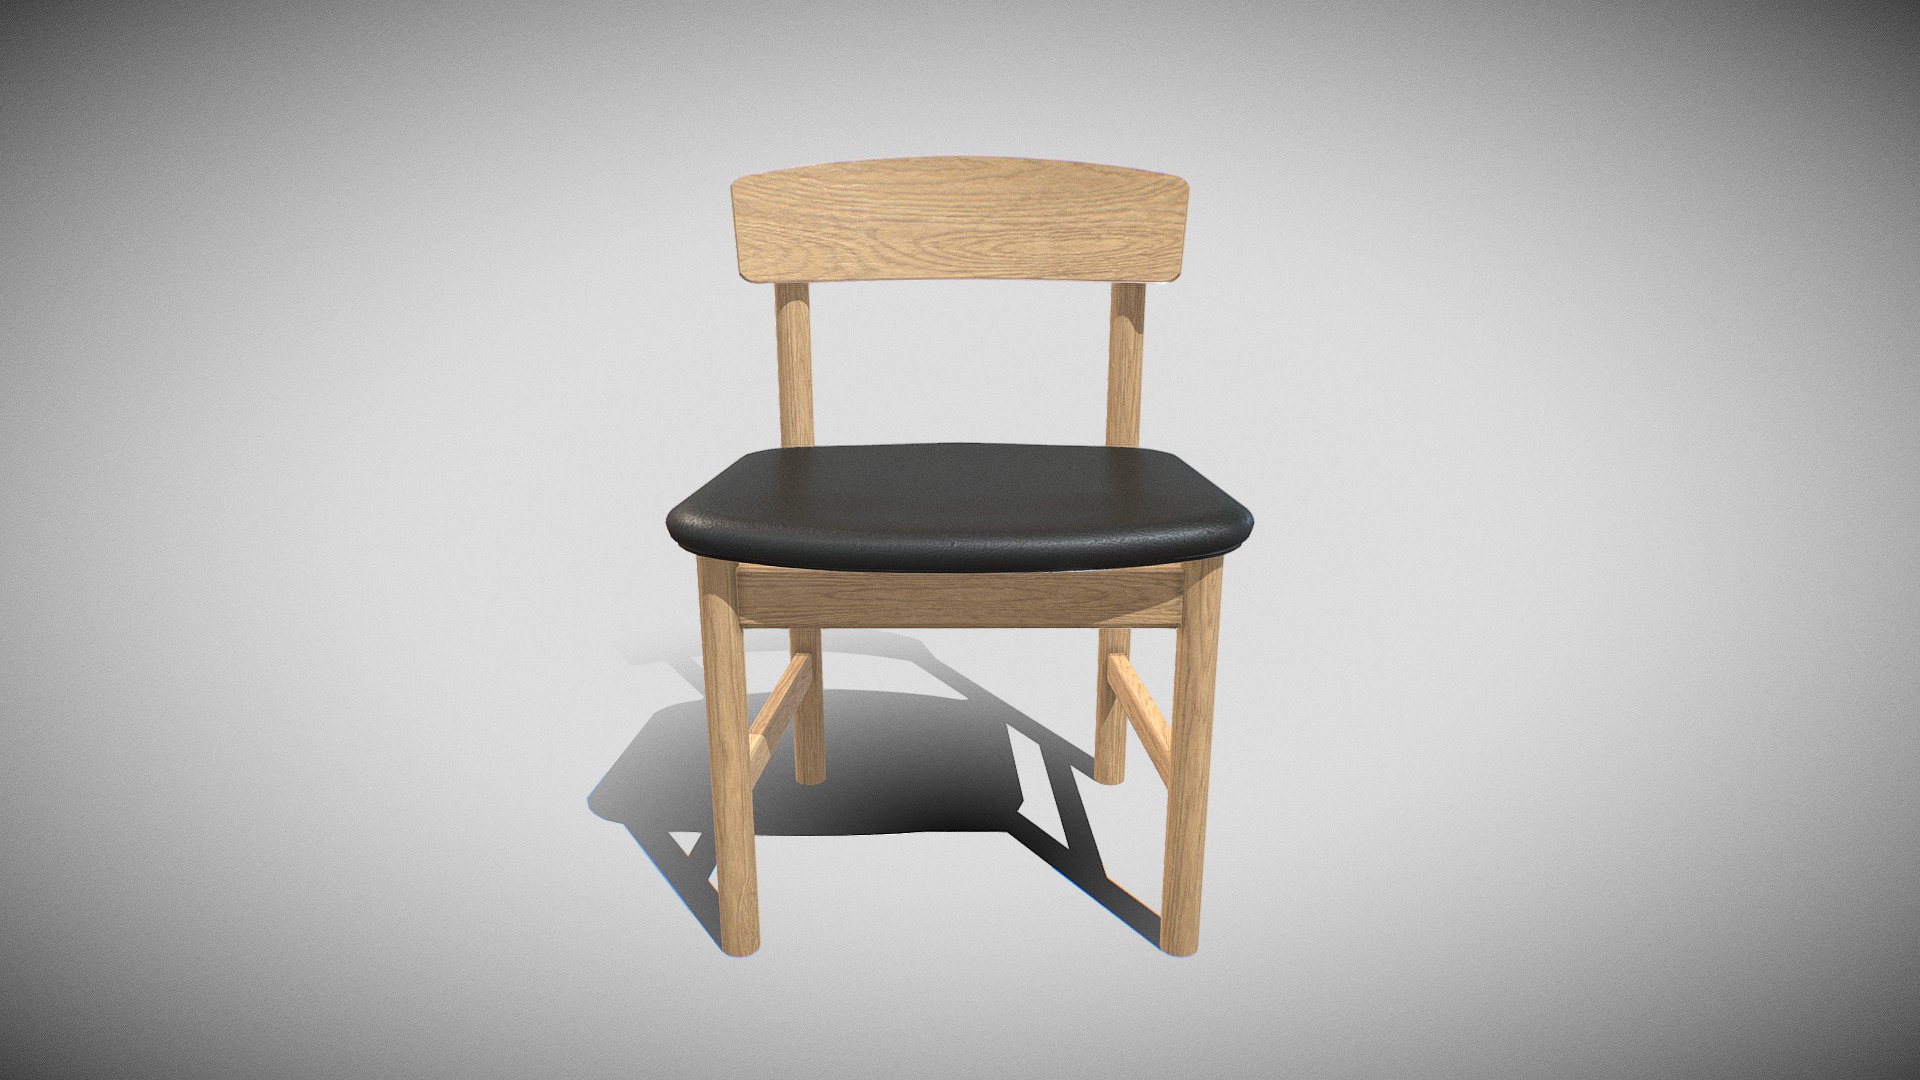 3D model Mogensen Chair Model-3236 oak,Black leather - This is a 3D model of the Mogensen Chair Model-3236 oak,Black leather. The 3D model is about a wooden chair on a white background.